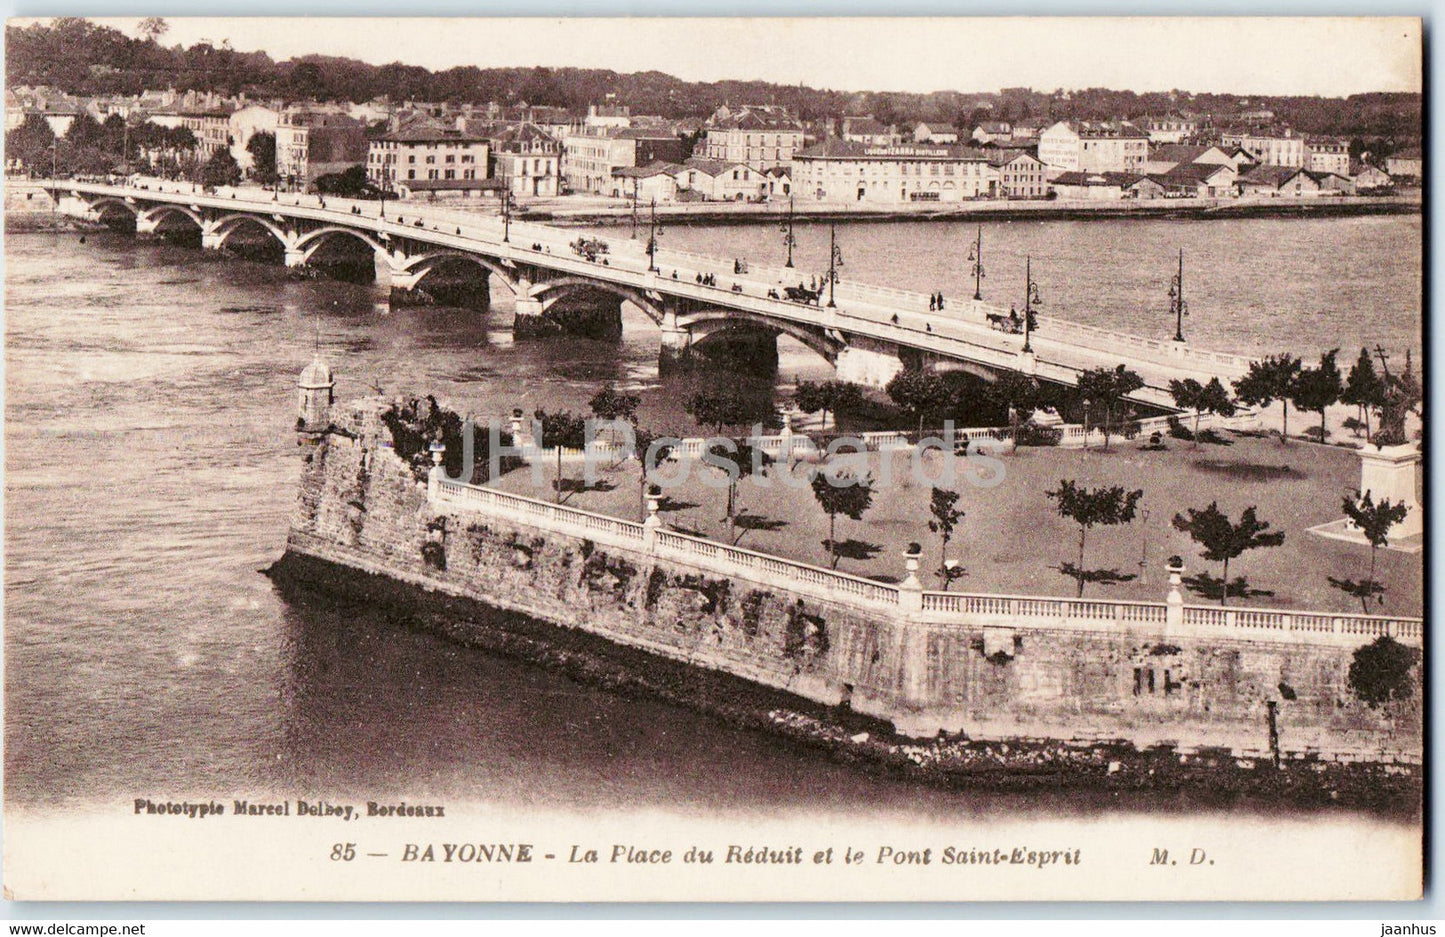 Bayonne - La Place du Reduit et le Pont Saint Esprit - bridge - 85 - old postcard - France - used - JH Postcards